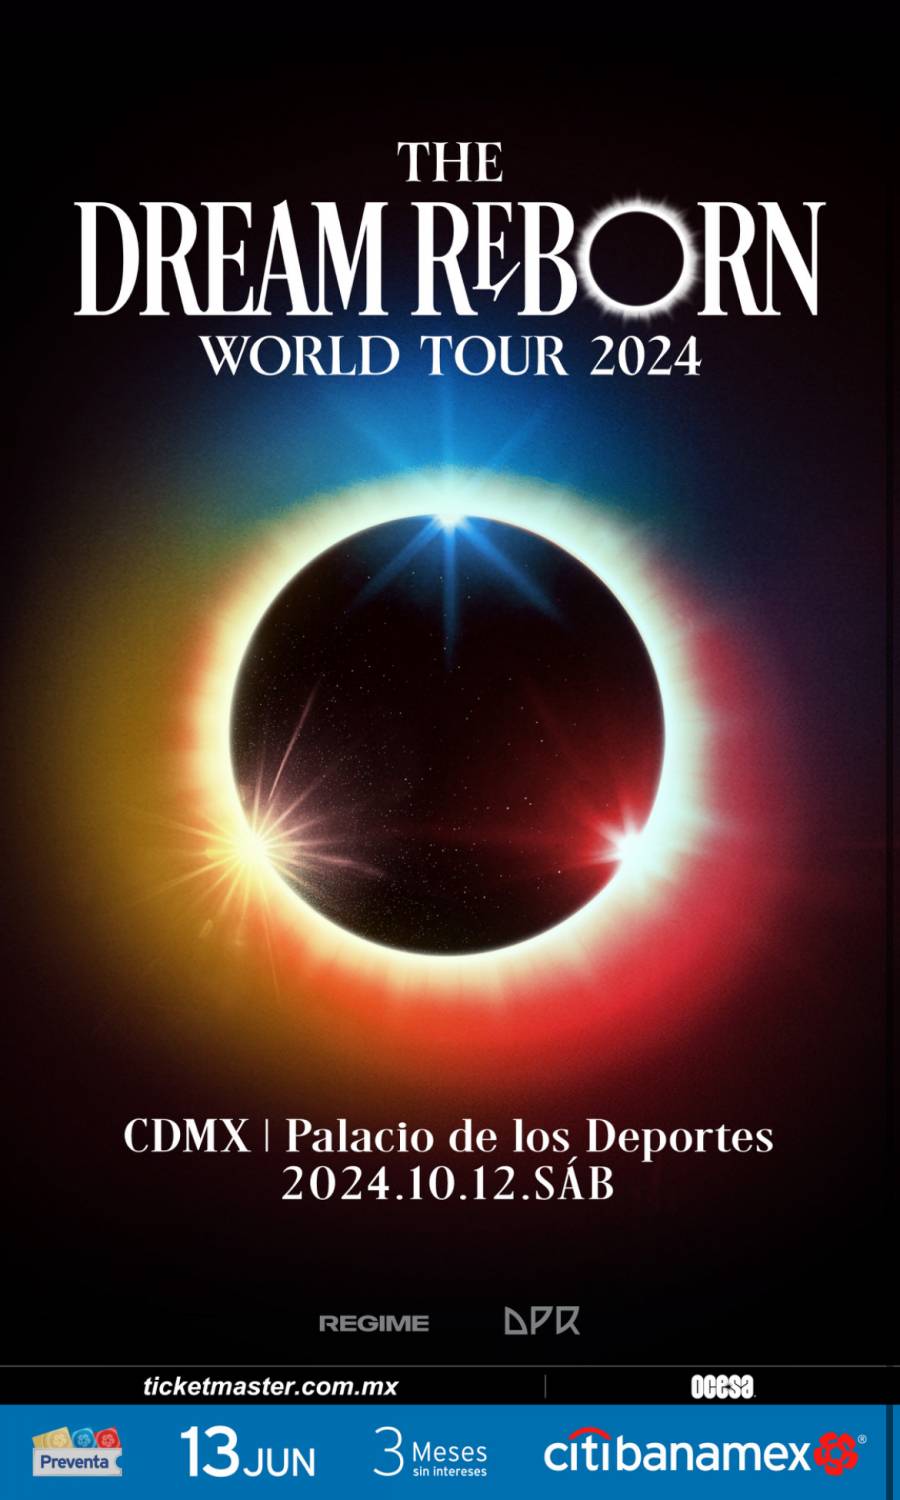 DPR ANUNCIA SU GIRA DREAM REBORN WORLD TOUR EN AMÉRICA DEL NORTE, AMÉRICA DEL SUR, EUROPA Y EL REINO UNIDO